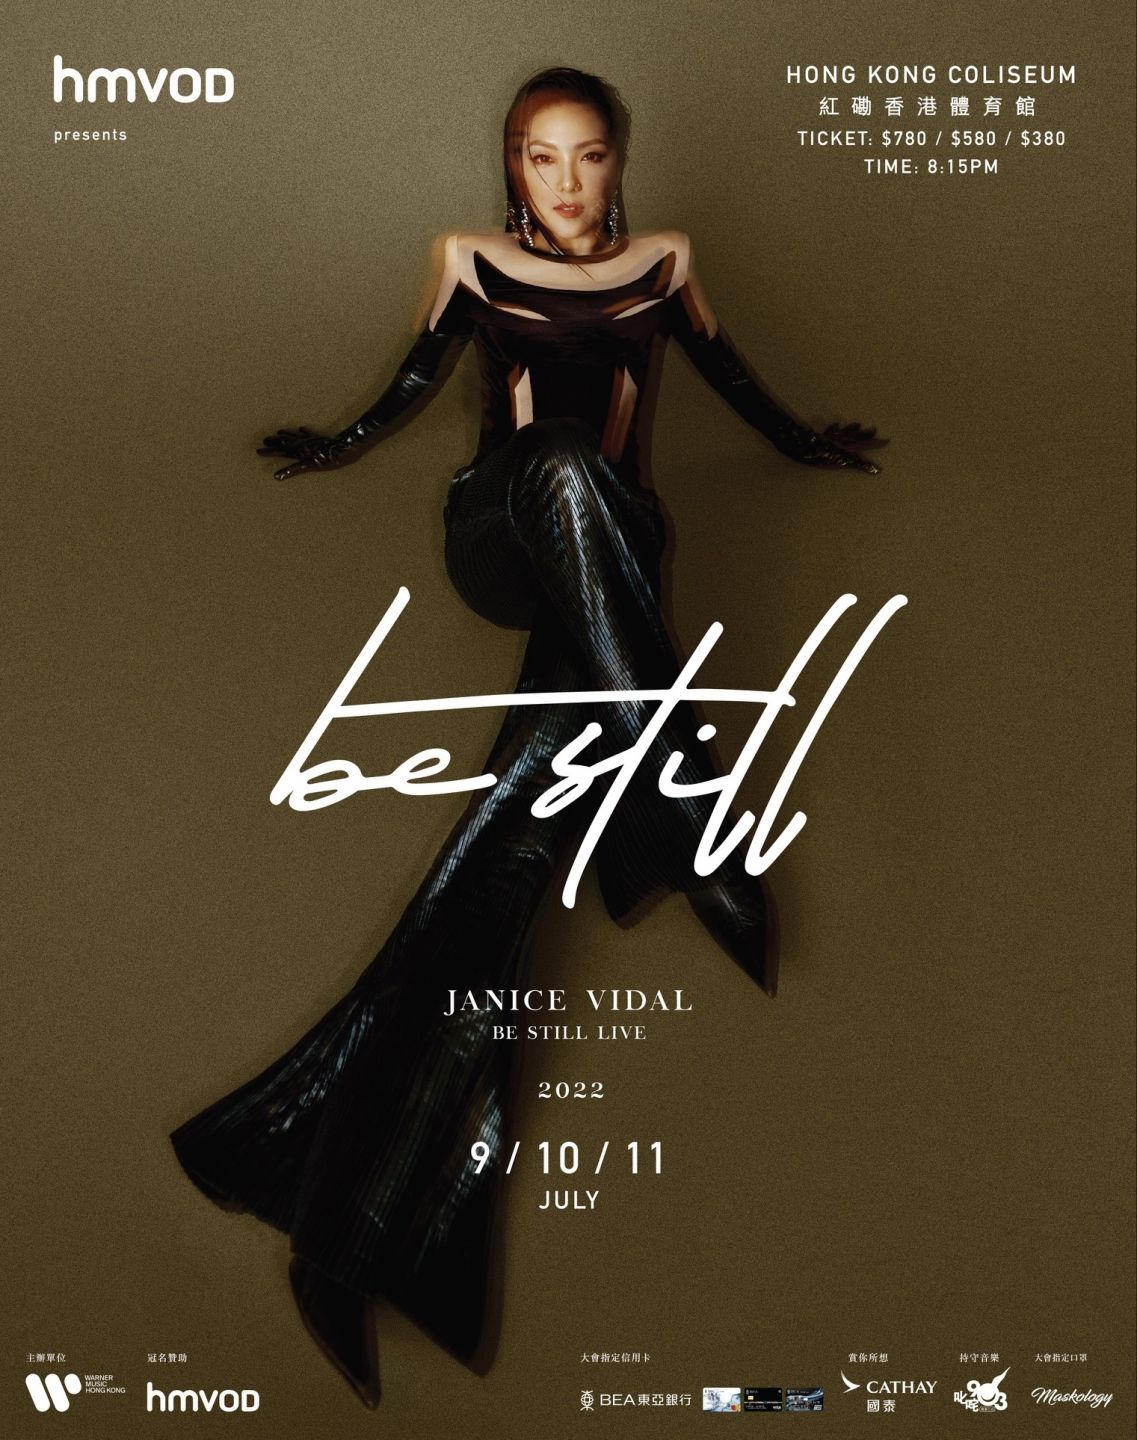 演唱會2022-7月衛蘭 Janice Vidal "Be Still Live" 演唱會